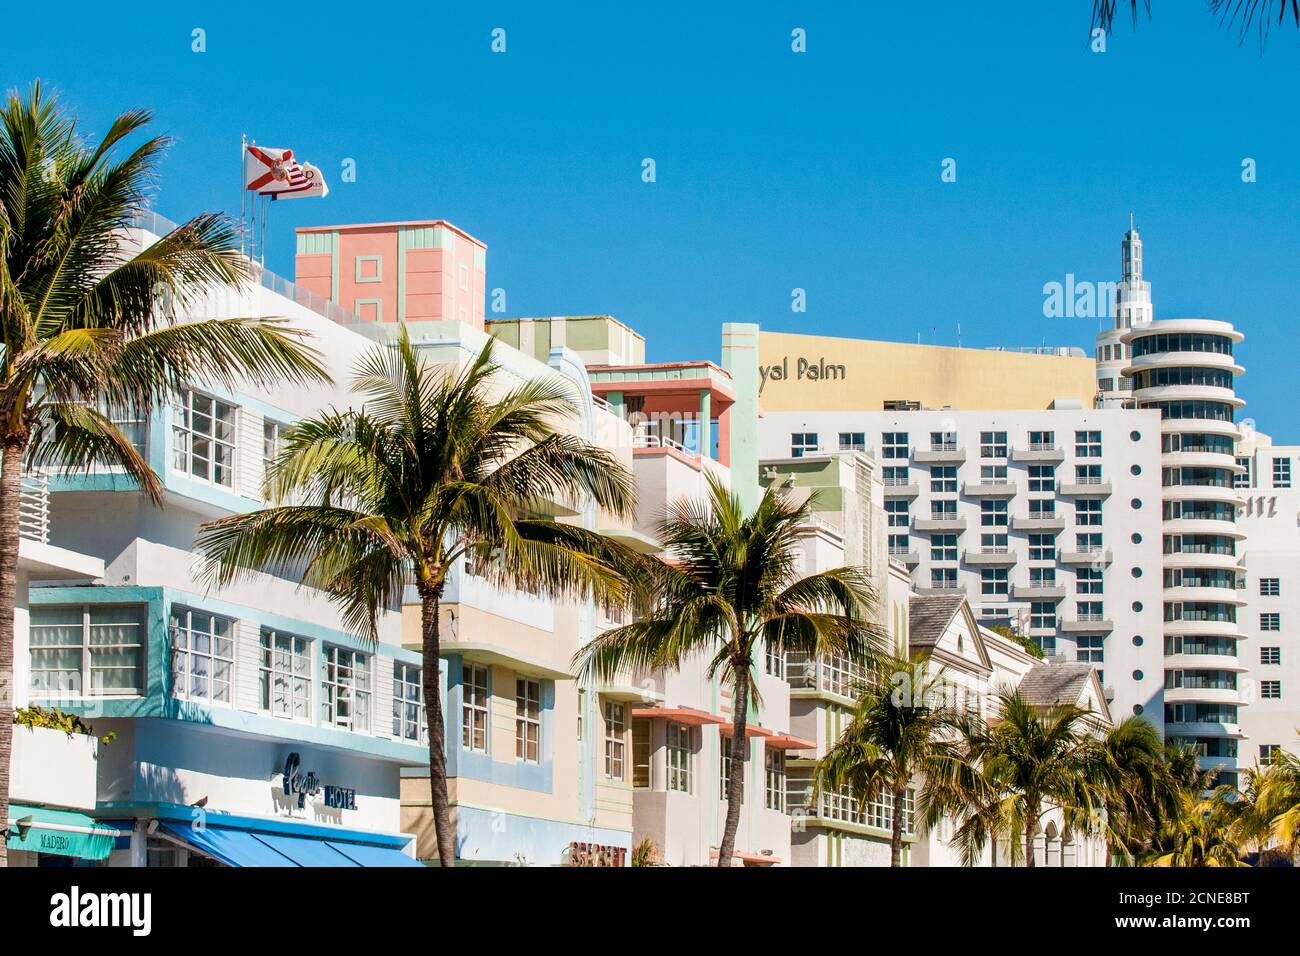 Arquitectura Art Deco en el distrito de South Beach, Miami, Florida, Estados Unidos de América Foto de stock